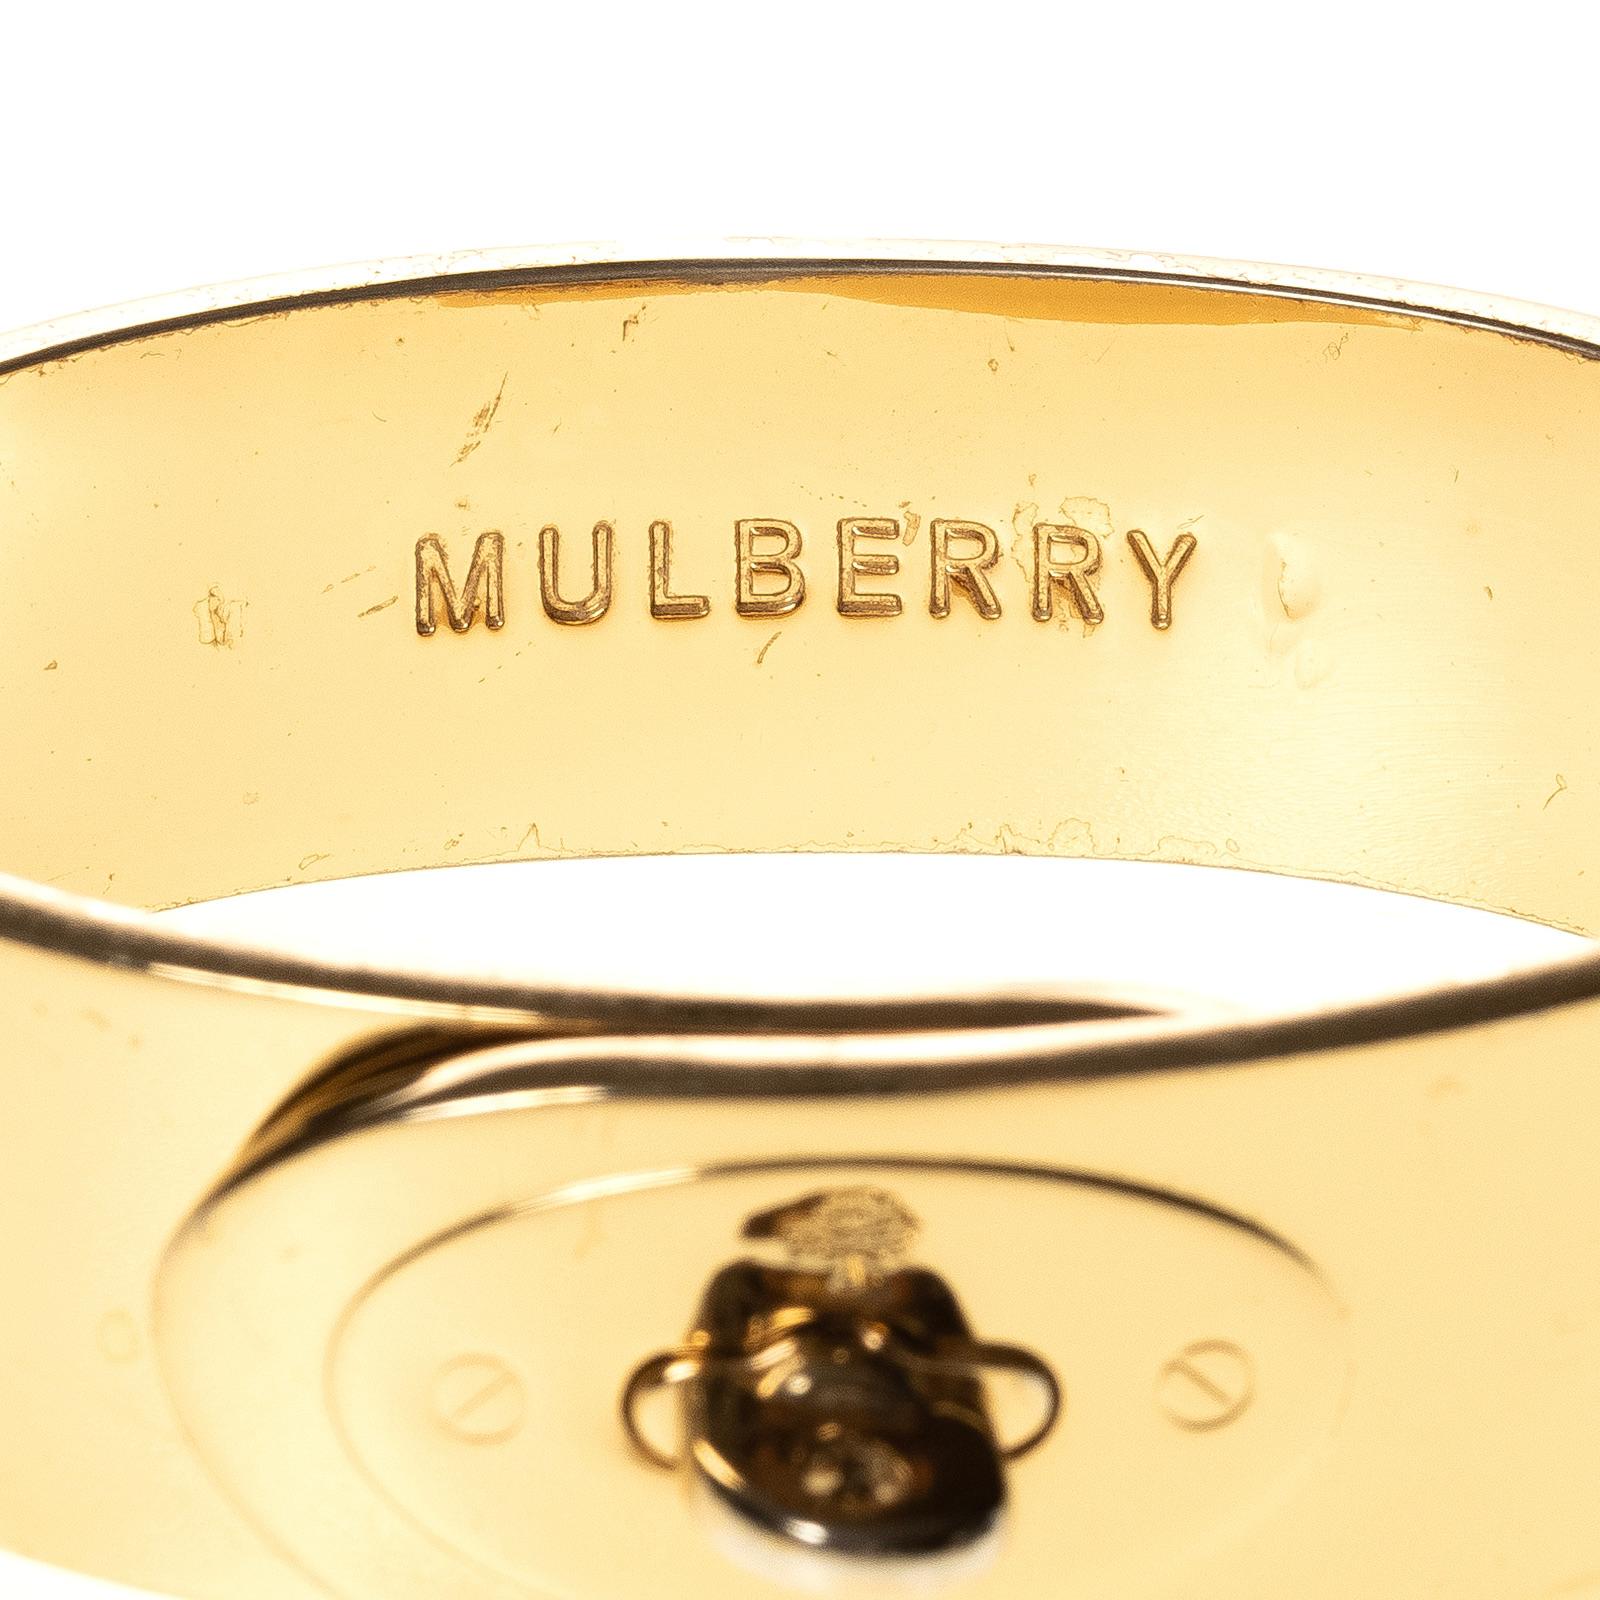 Mulberry Bayswater Armband aus goldfarbenem Metall mit Scharnier- und Drehverschlüssen. Logo auf der Innenseite.

FARBE: Gold 
MATERIAL: Goldfarbenes Metall 
MASSEN: Innenumfang: 7.5